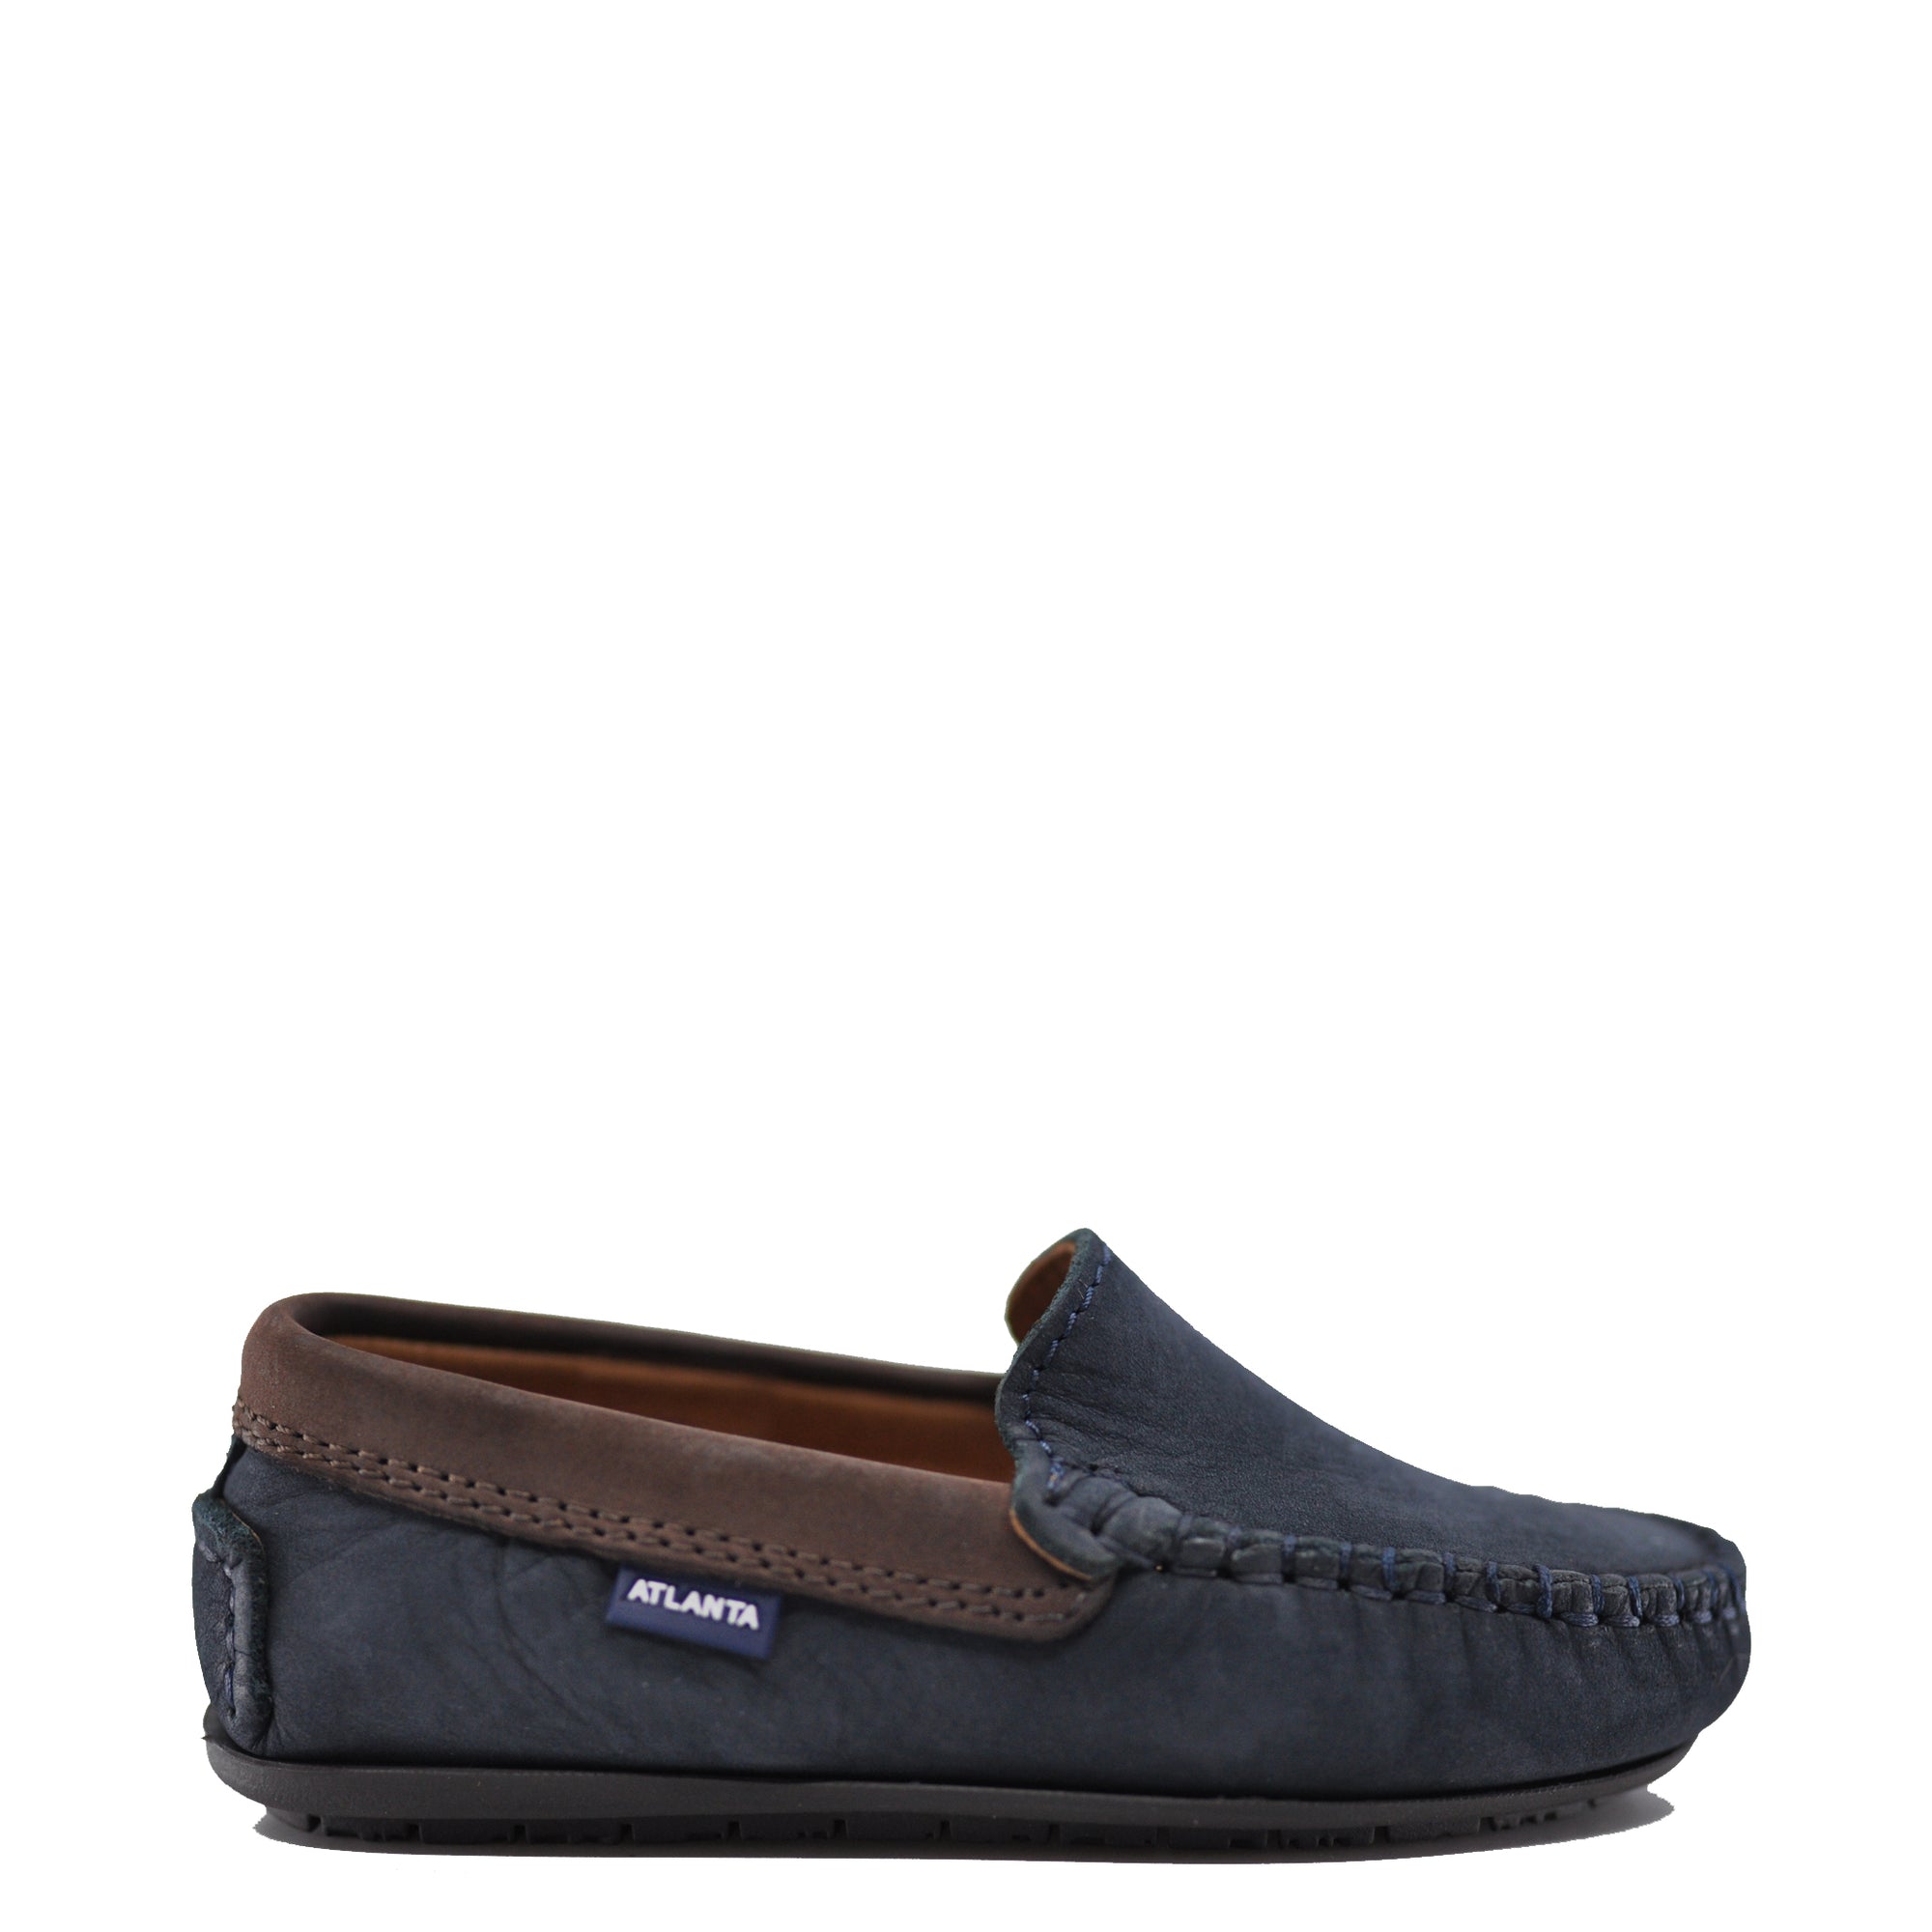 Atlanta Mocassin Navy and Brown Nubok Loafer-Tassel Children Shoes